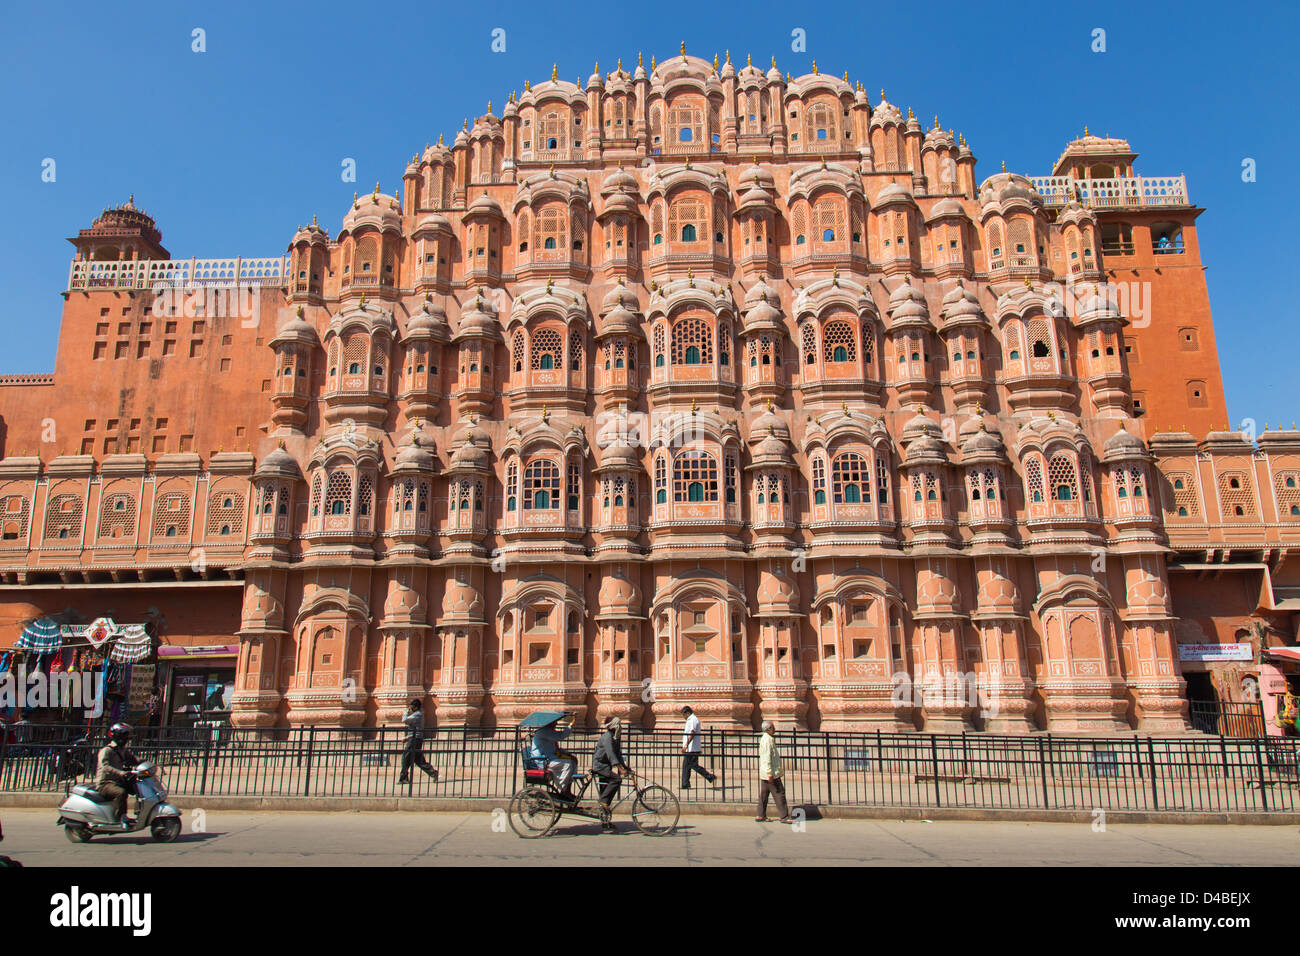 Hawa Mahal or Wind Palace, Jaipur, Rajasthan, India Stock Photo